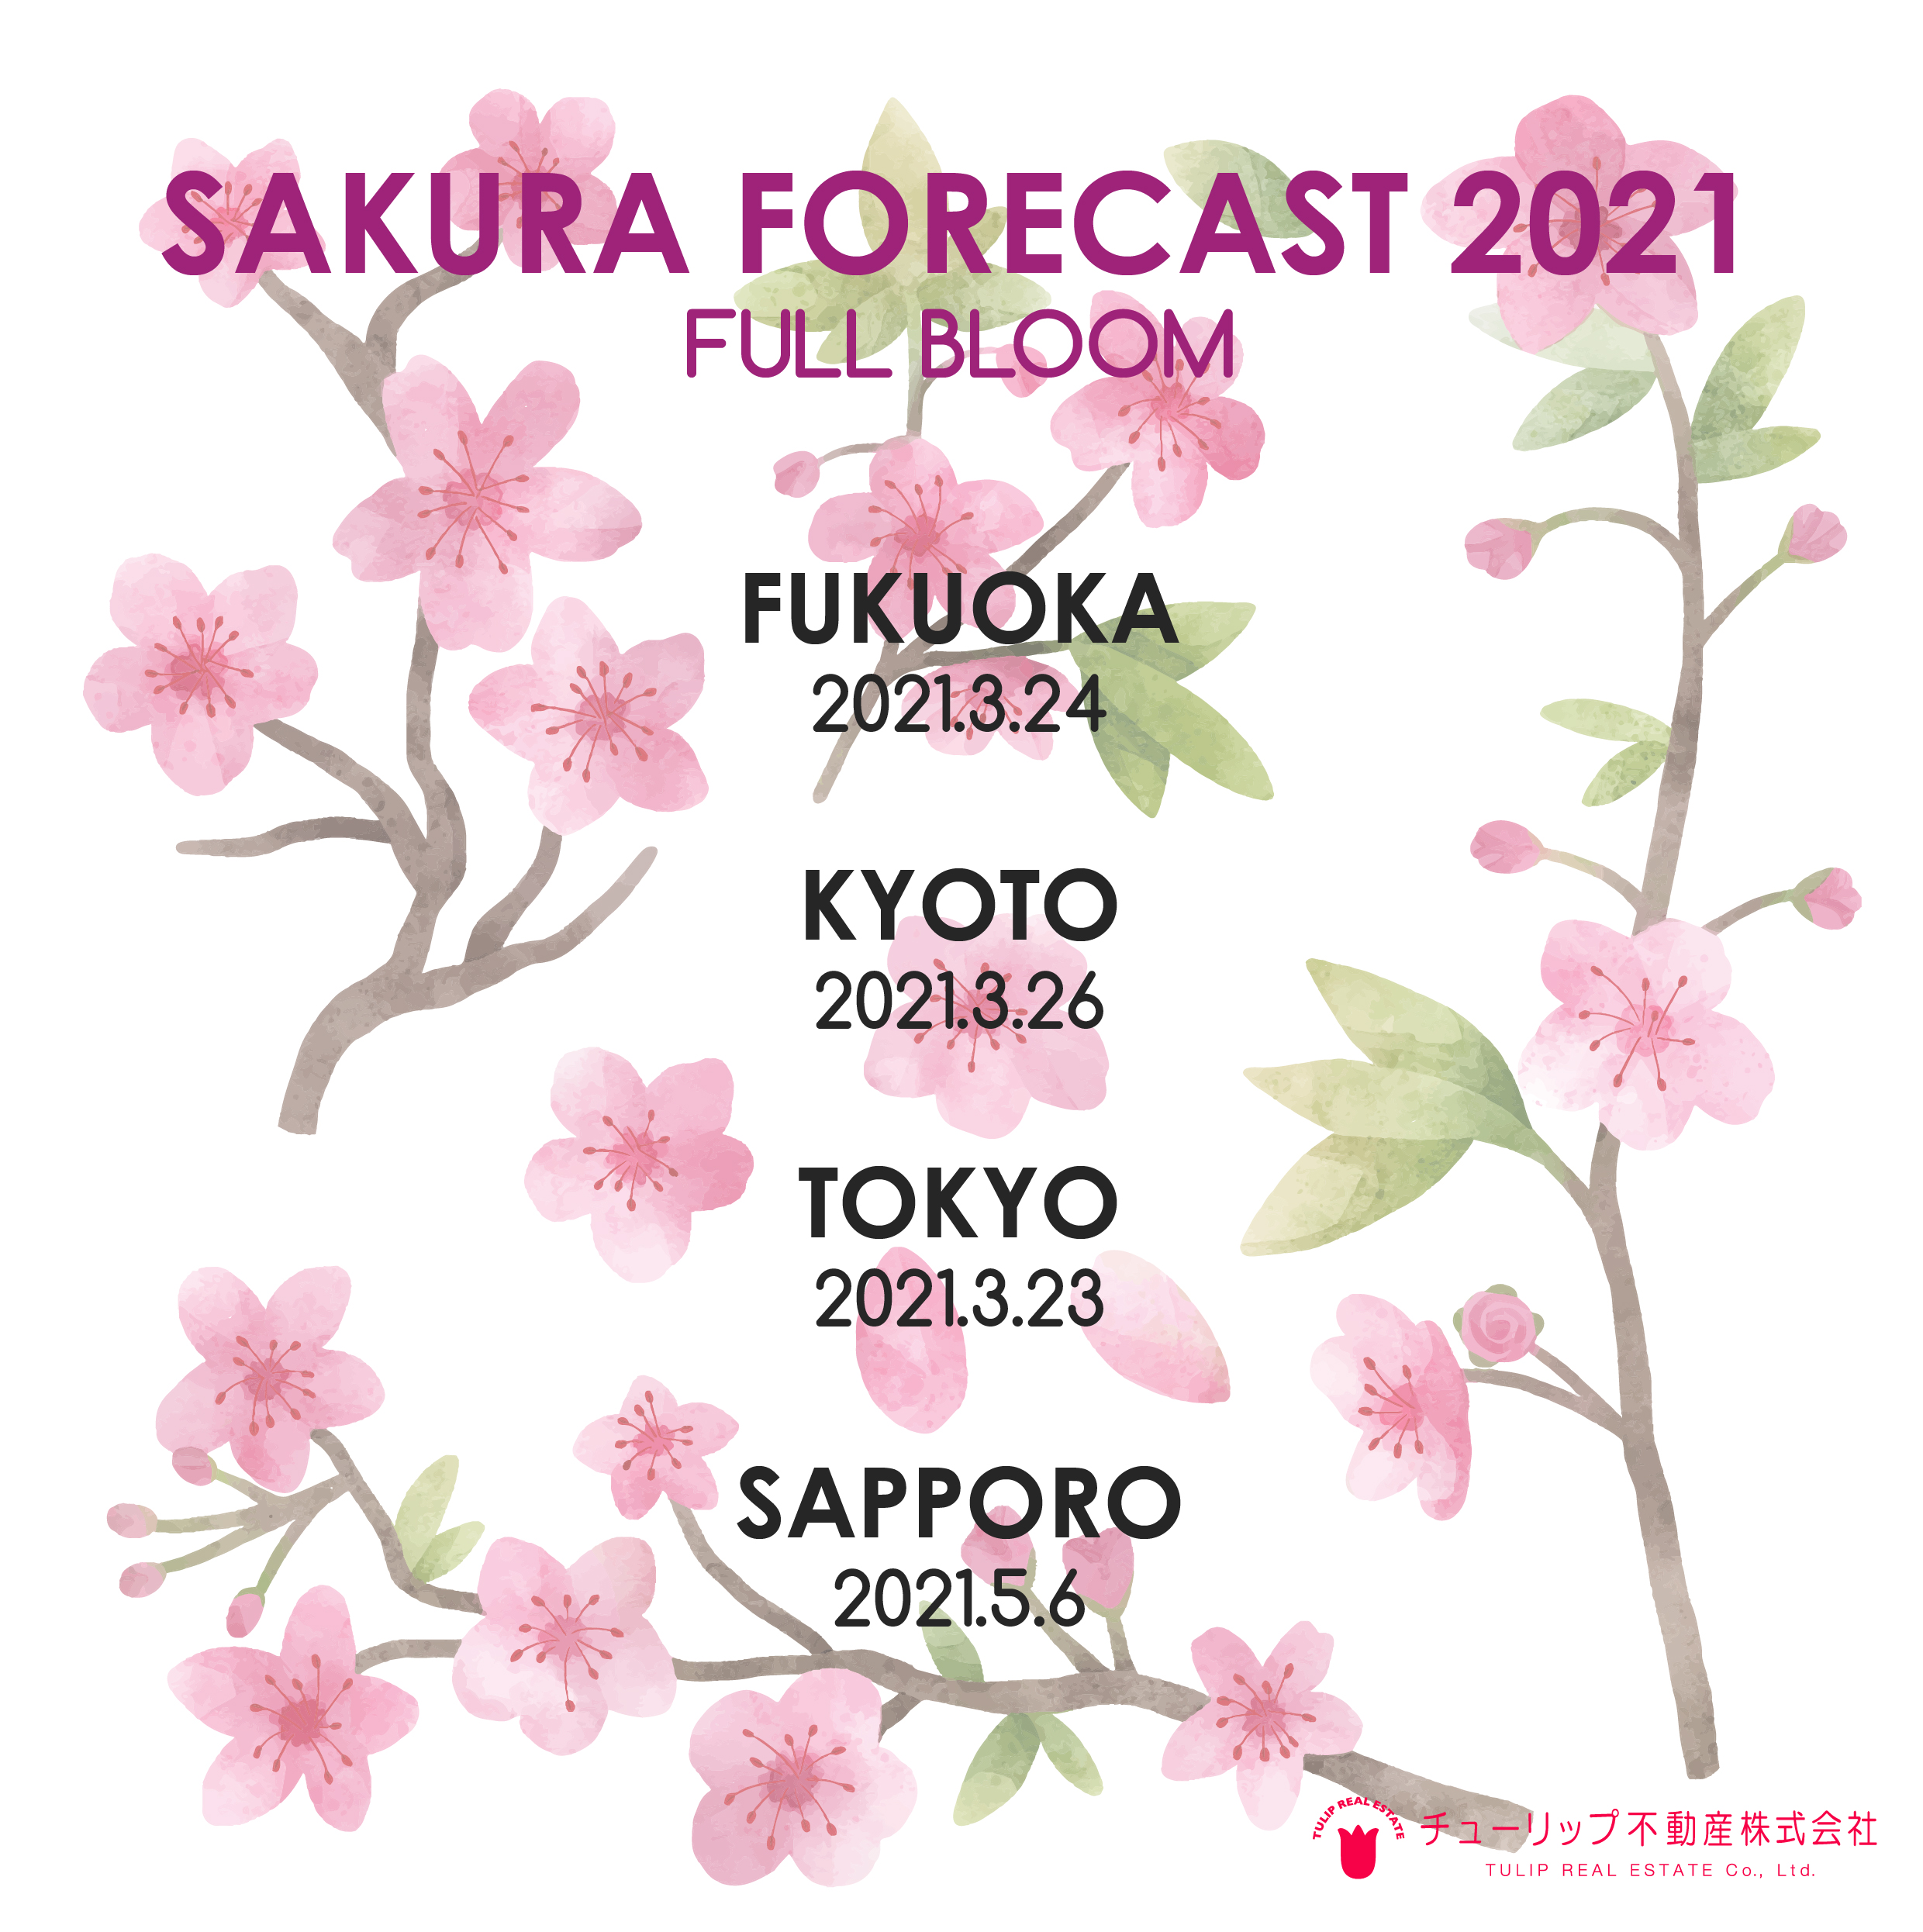 Sakura opening days